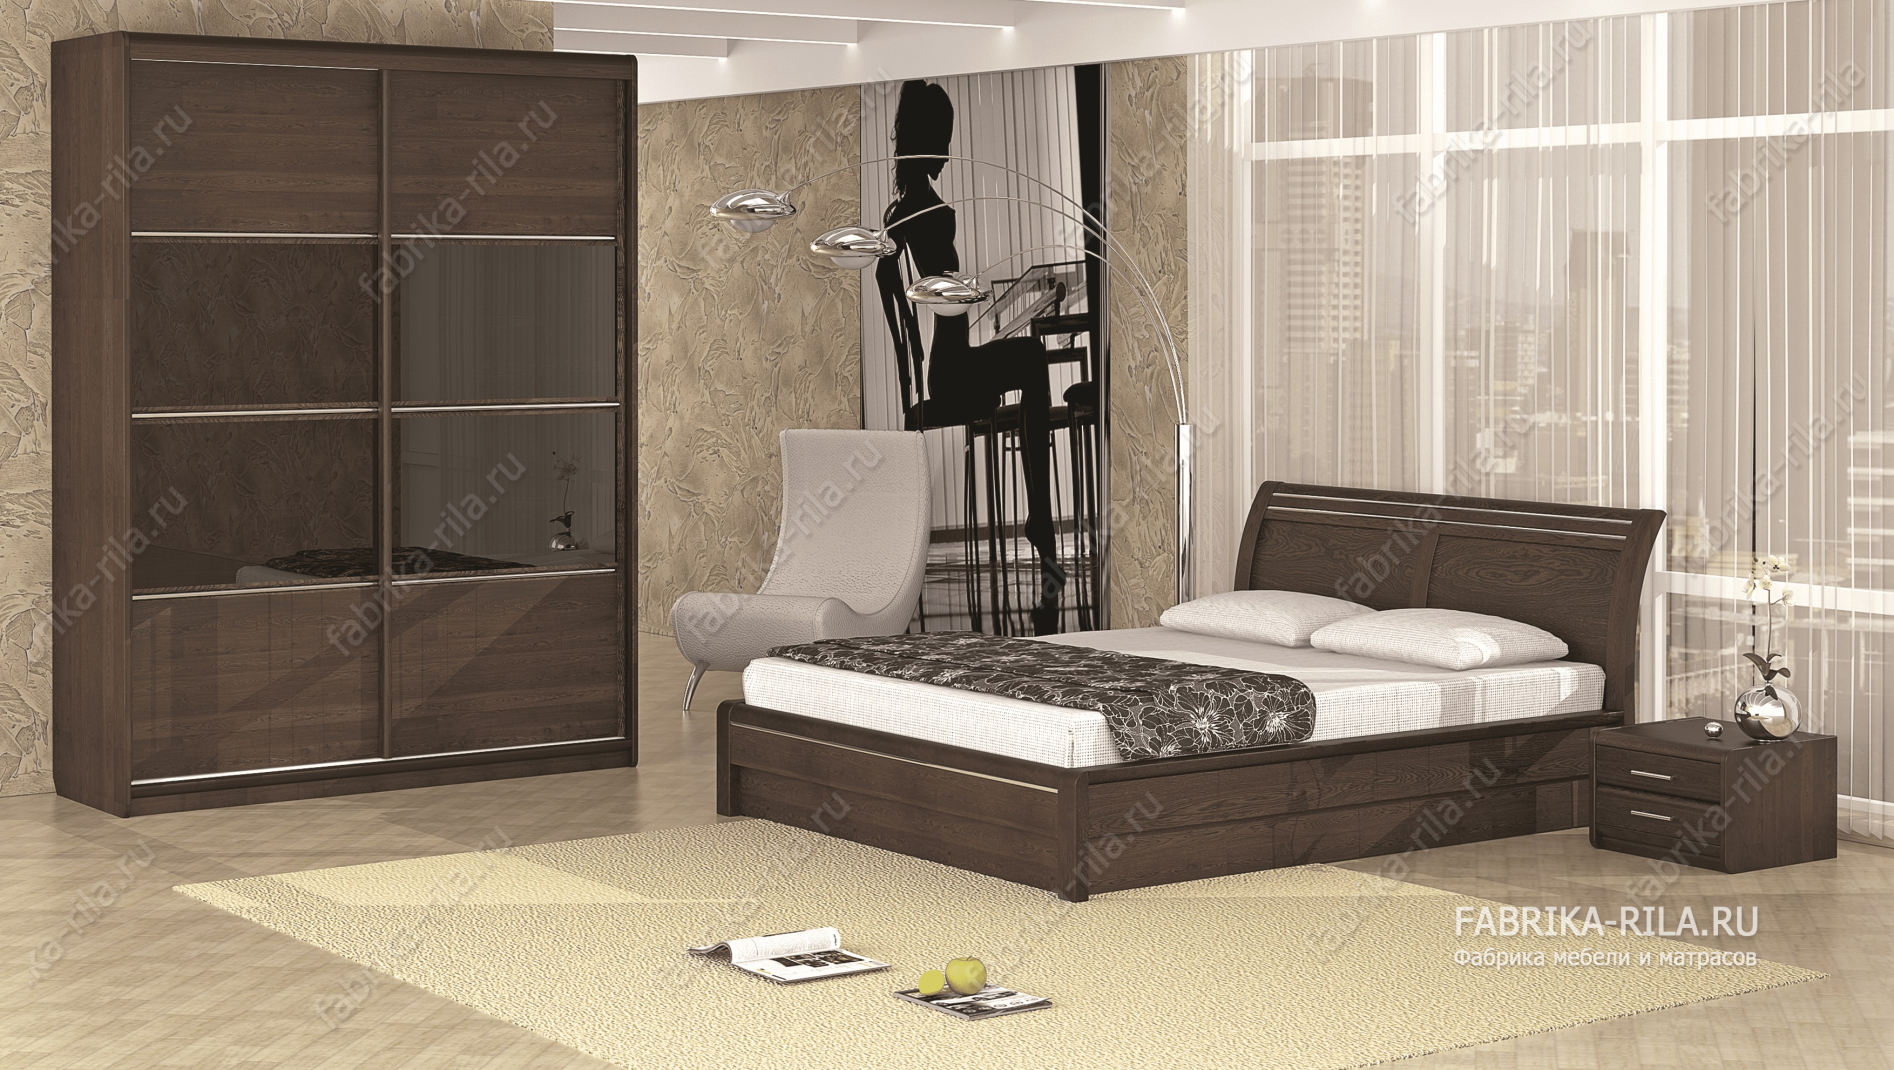 Кровать Okaeri 2 — 160x200 см. из сосны